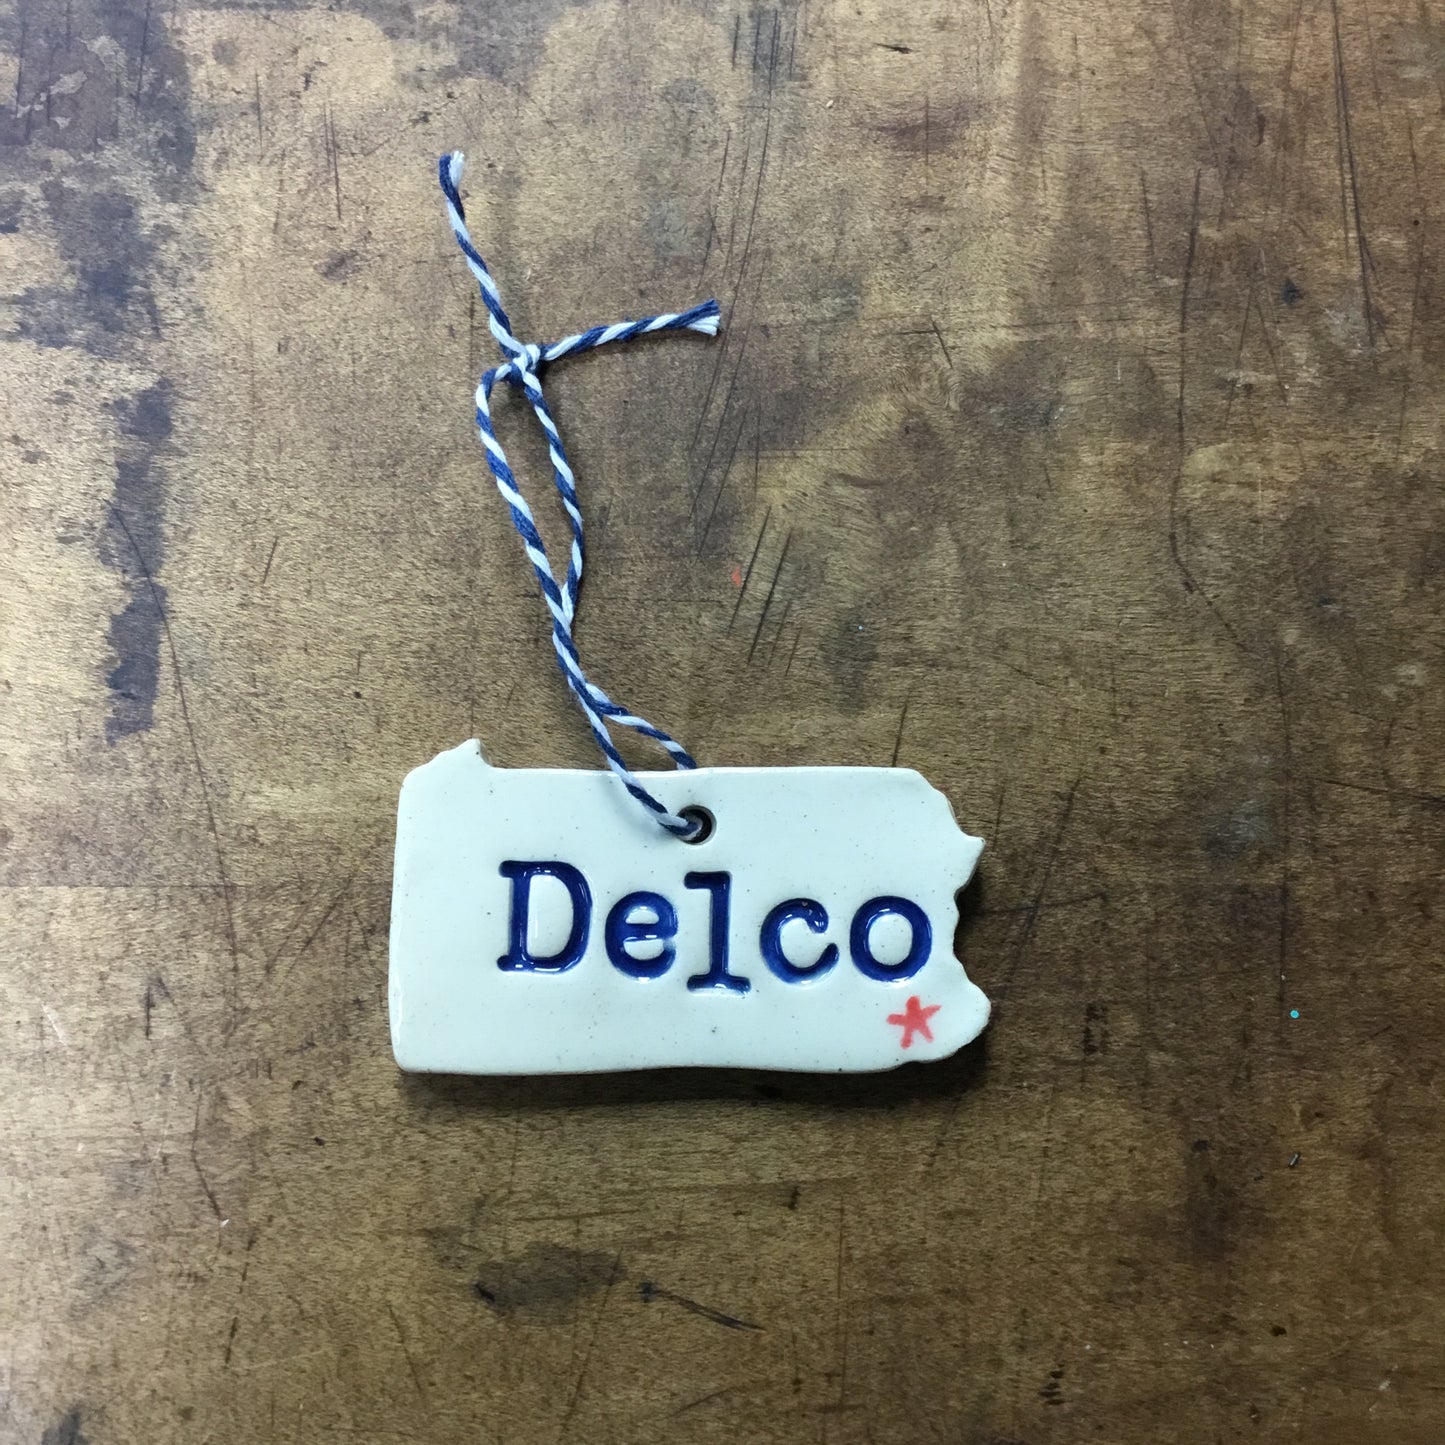 DELCO Ceramic Ornament